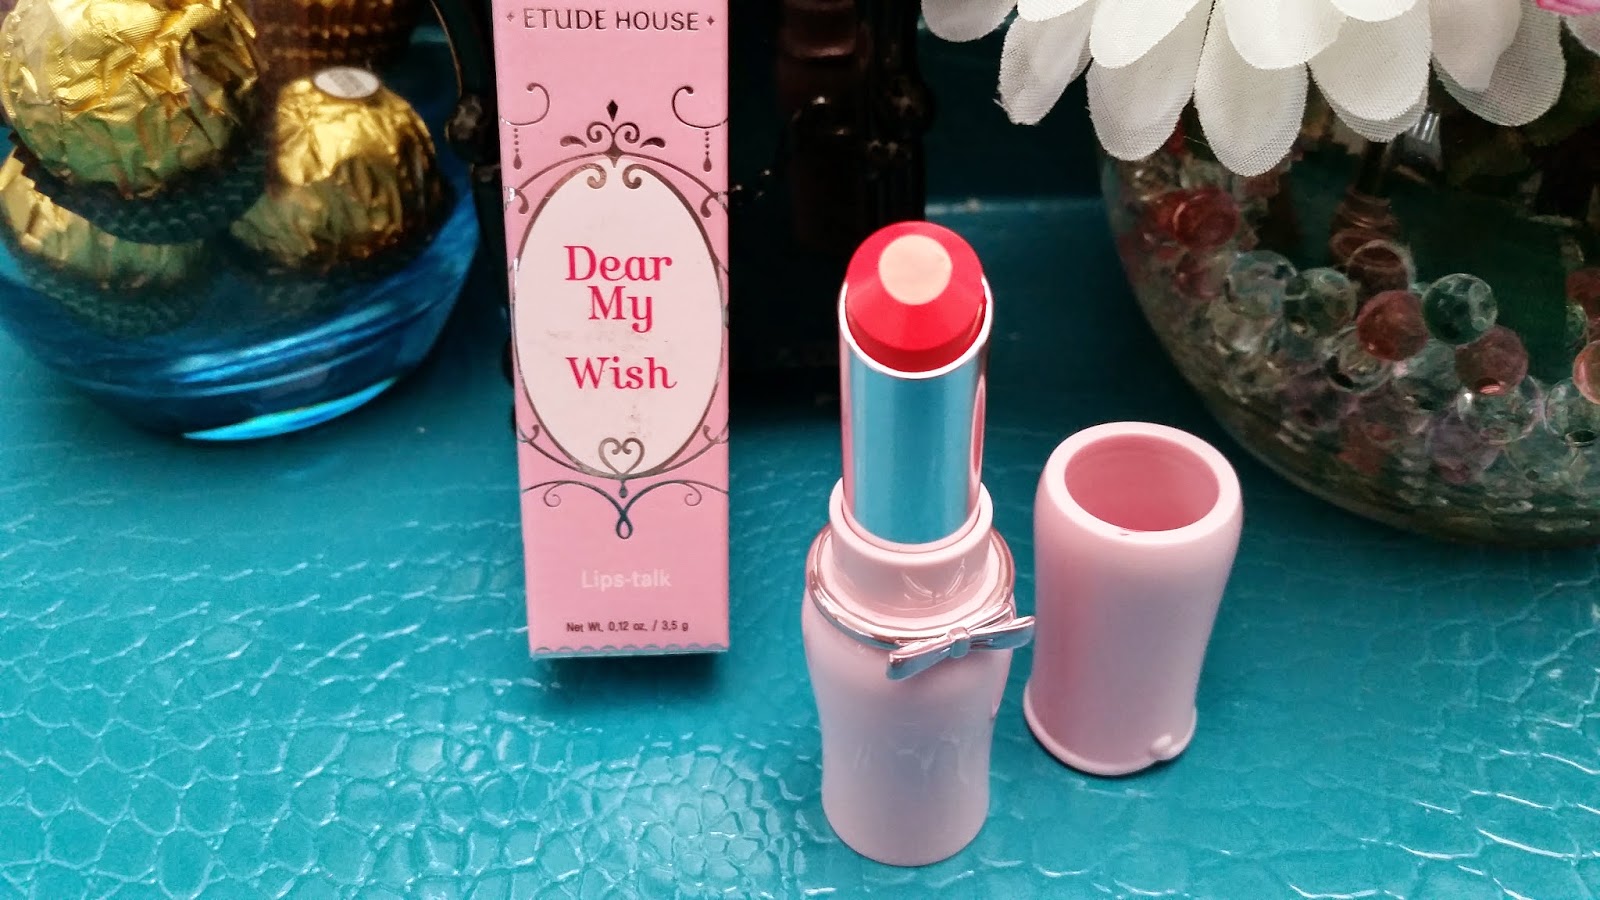 Etude House Dear My Wish Lips-Talk Lipstick cute packaging